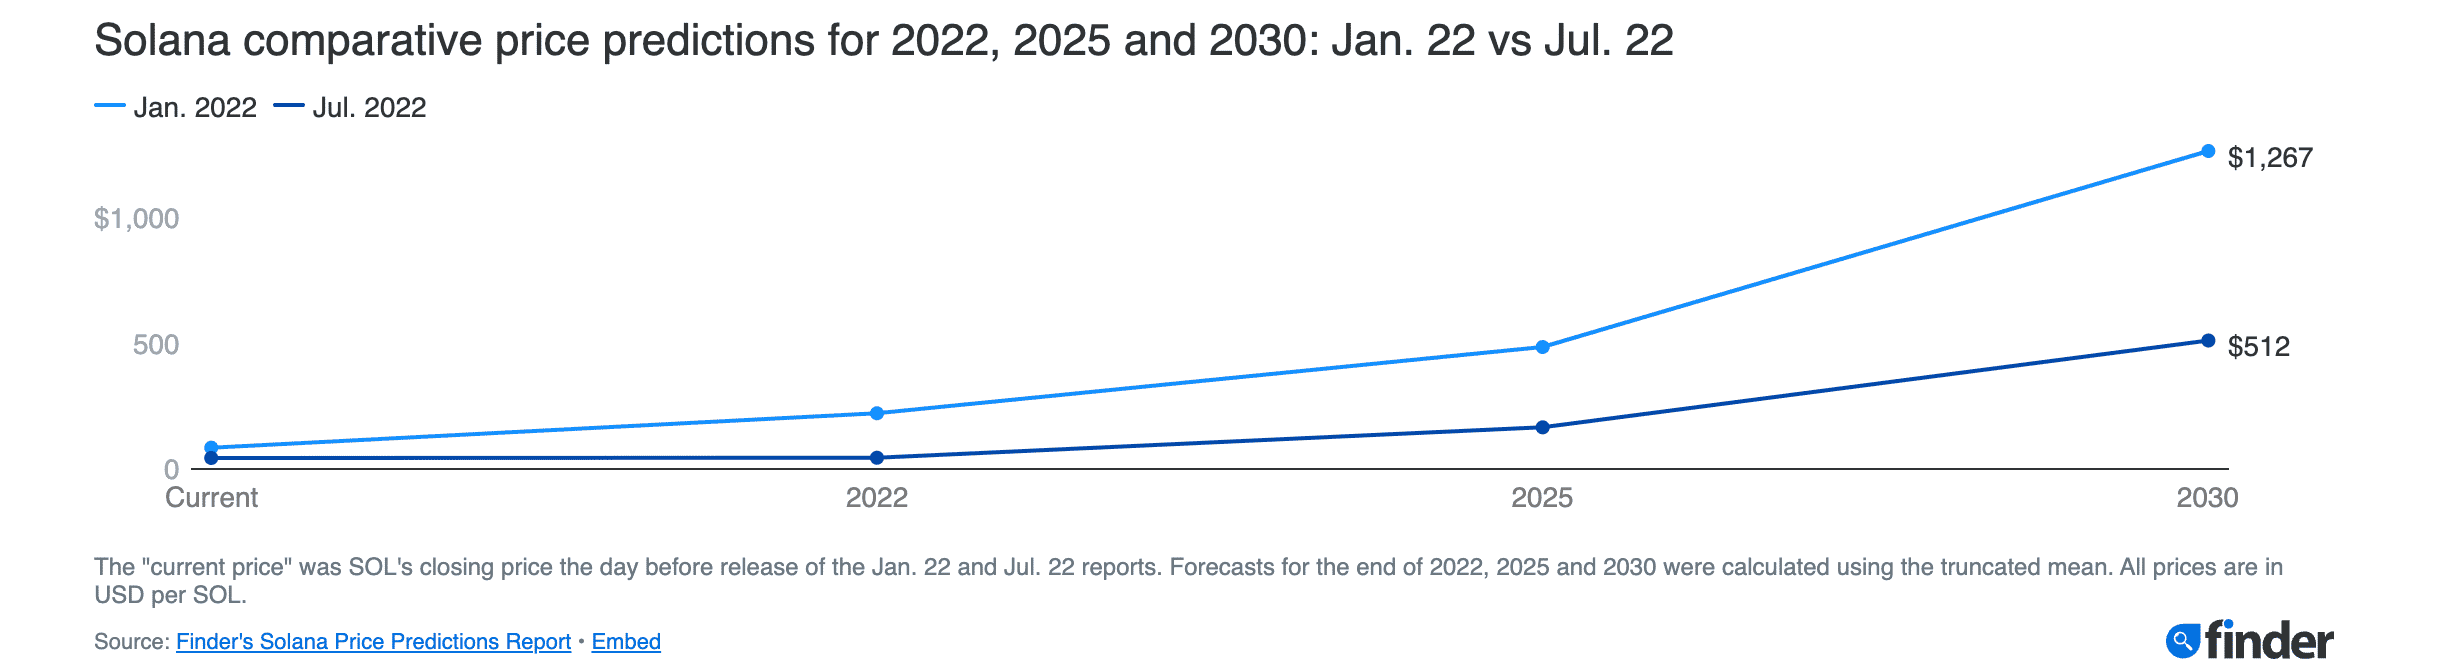 Dự đoán giá của Solana (SOL) 2025-30:> 1200 đô la trong thời gian sắp tới vào năm 2030? 45